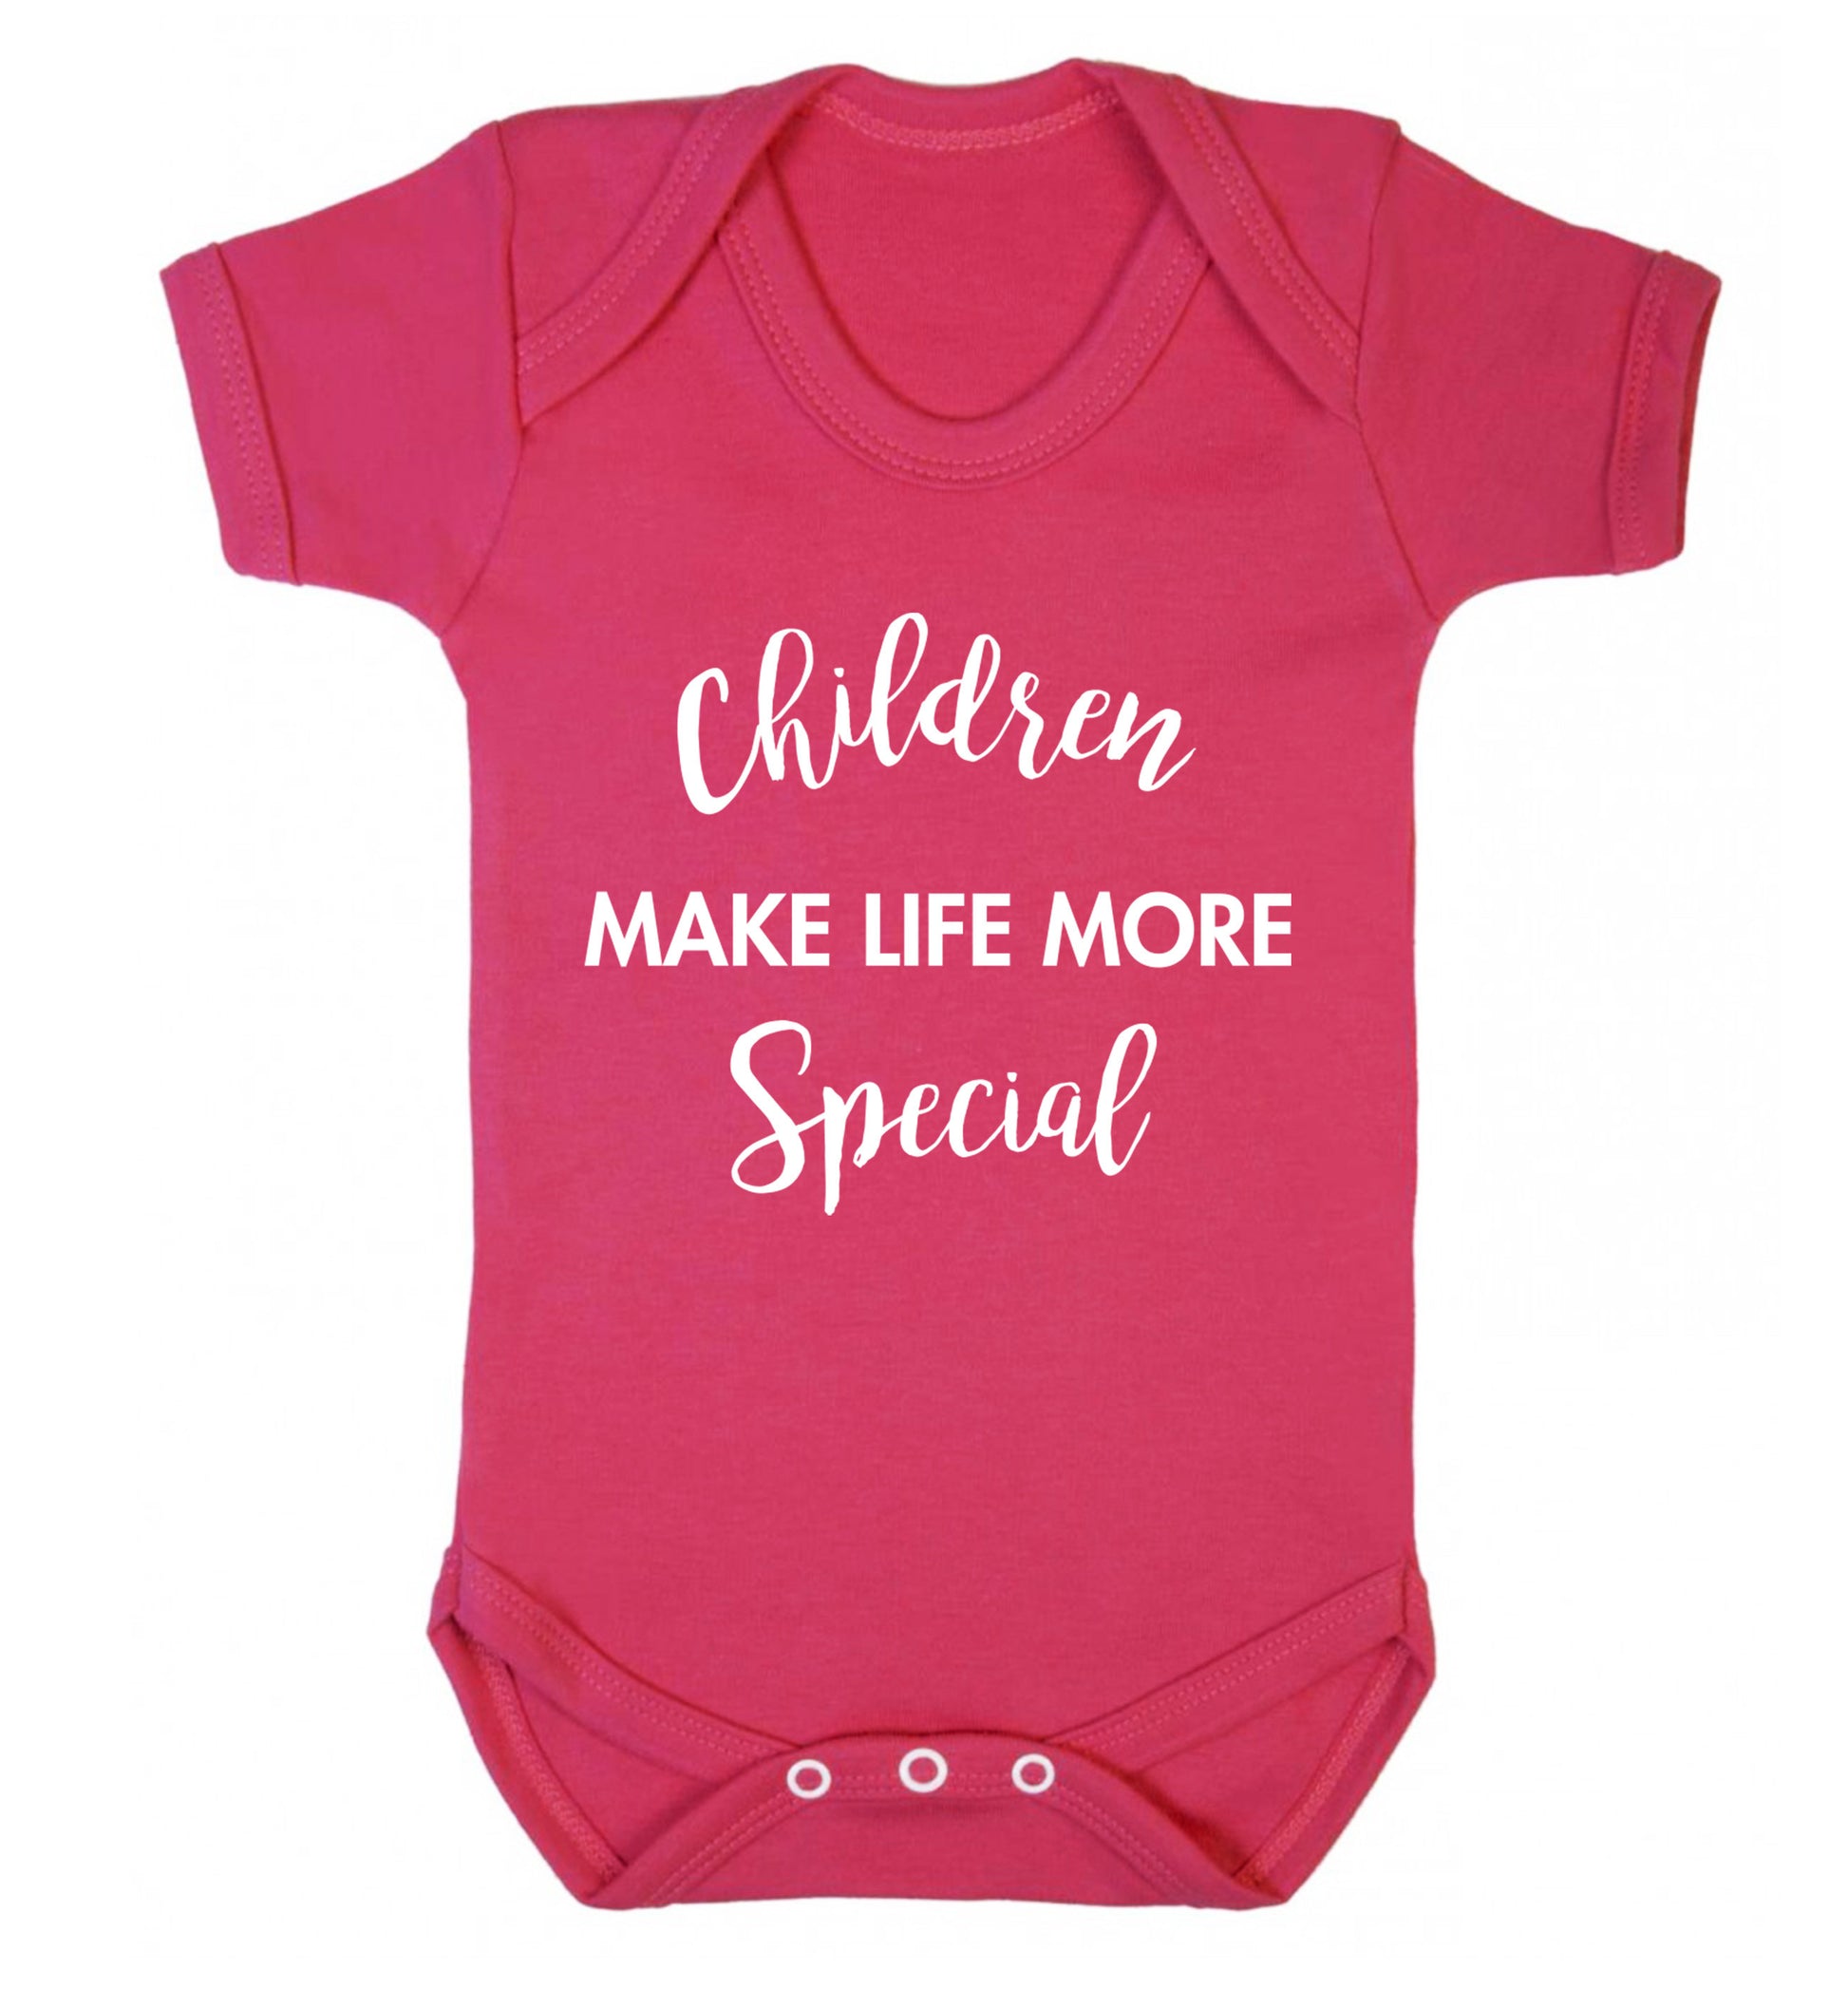 Children make life more special Baby Vest dark pink 18-24 months